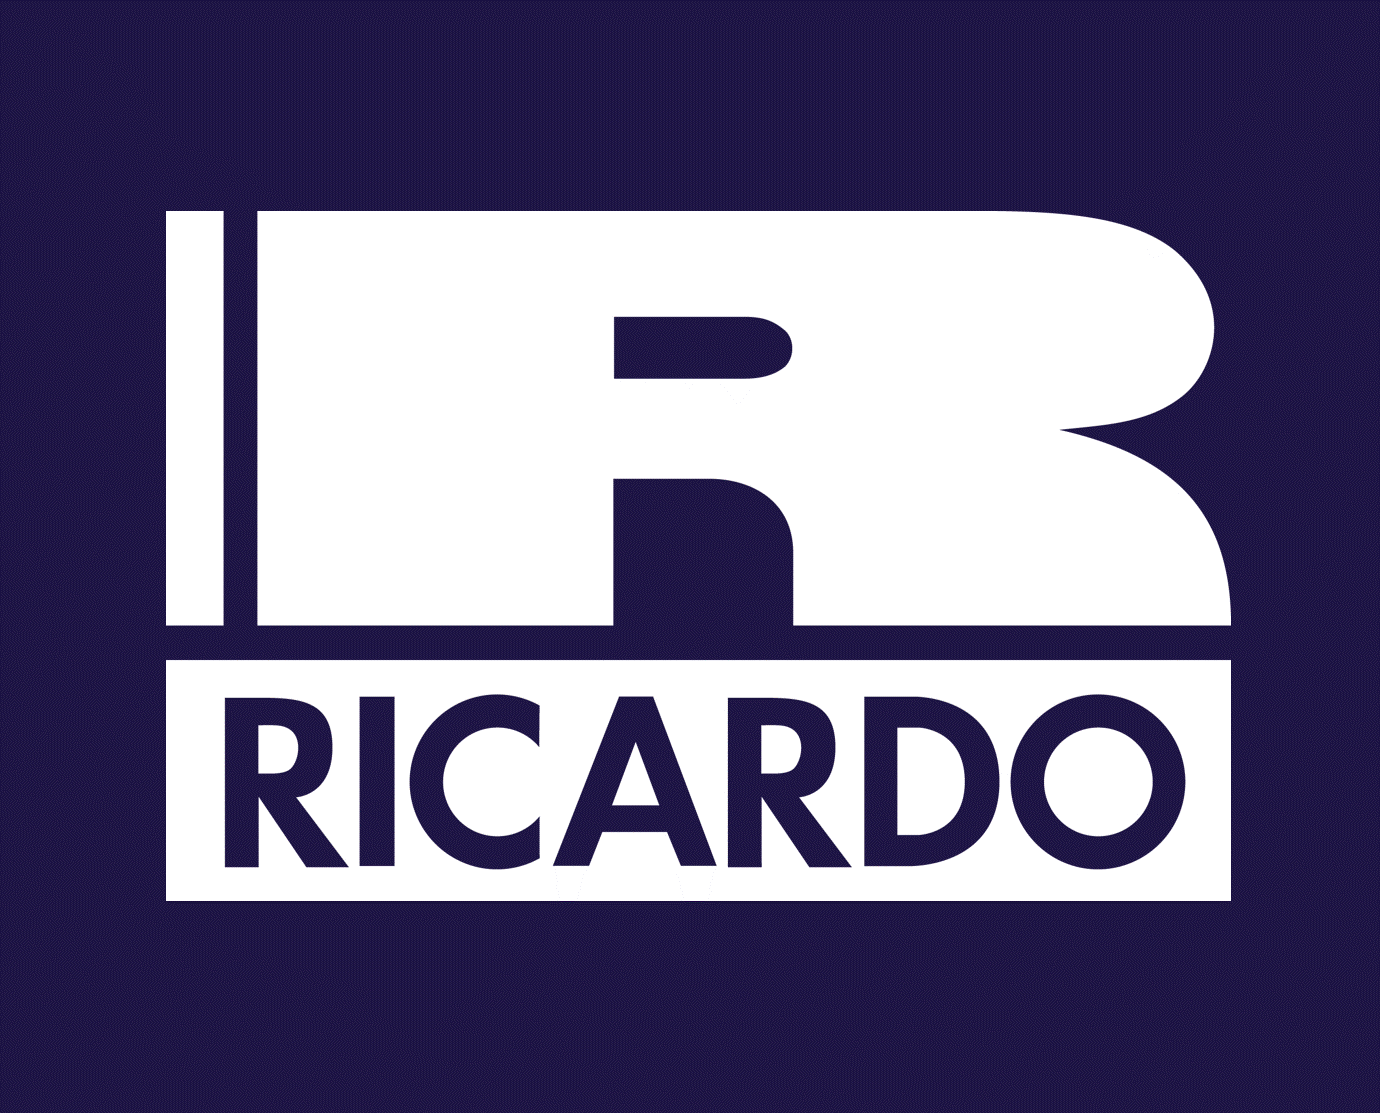 Ricardo Rail logo